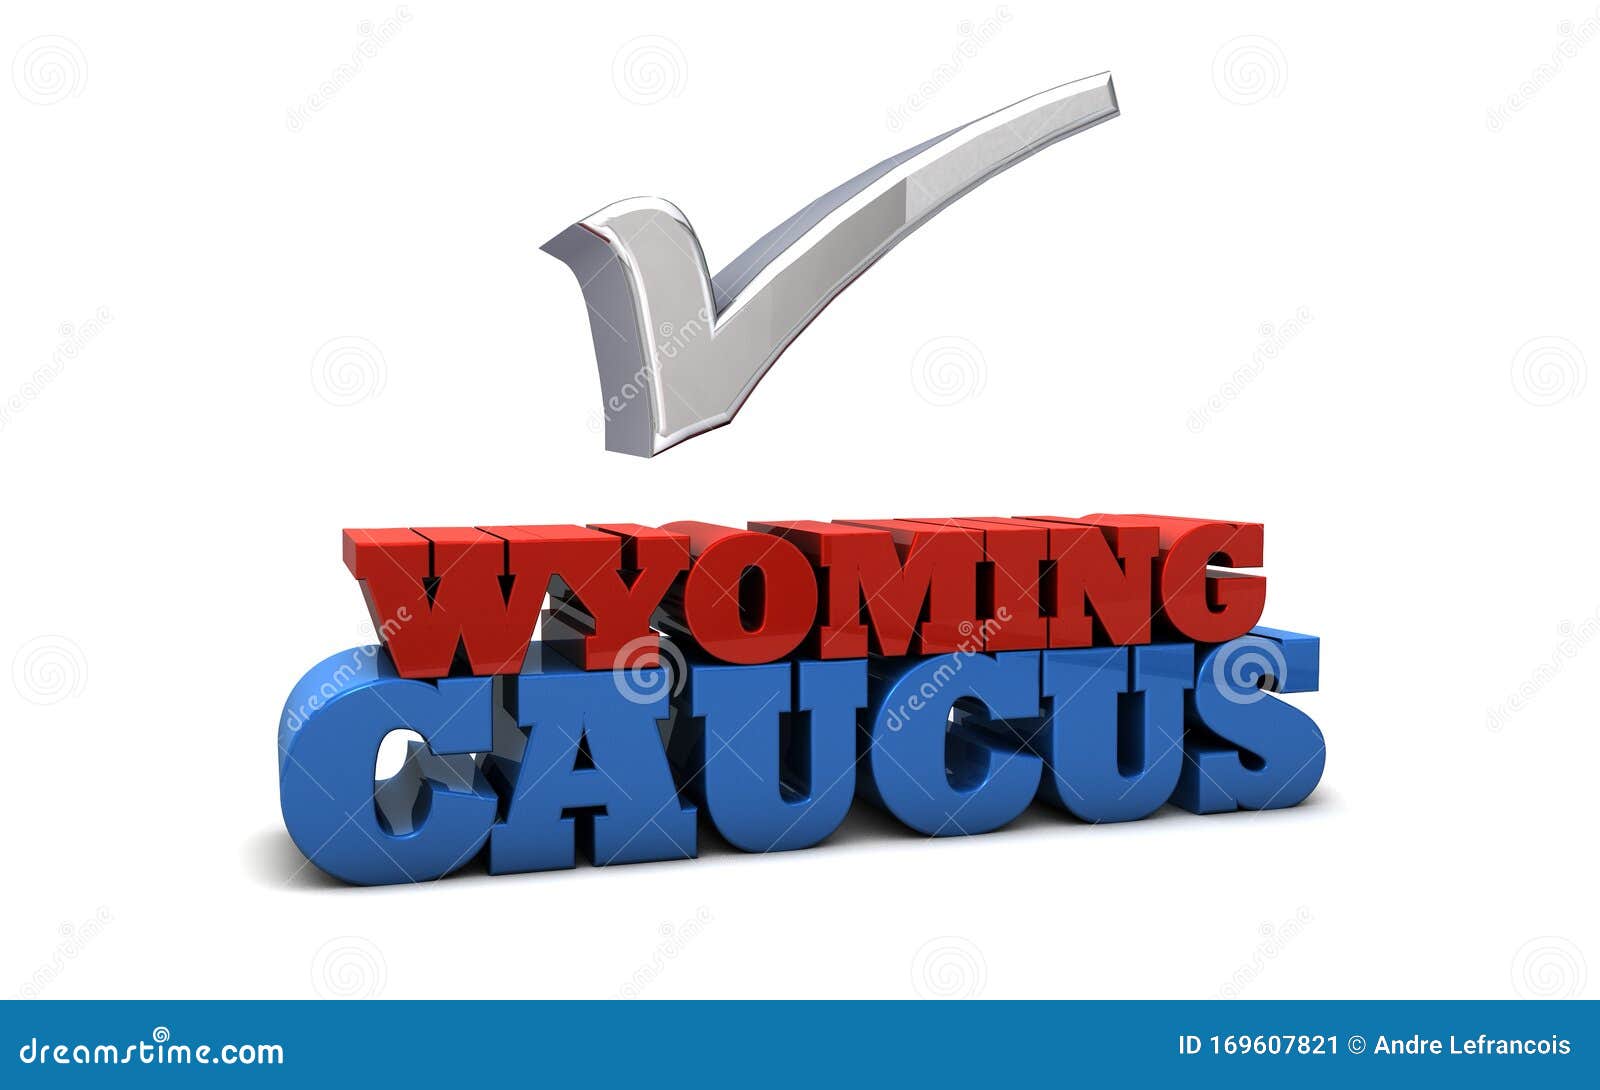 wyoming caucus